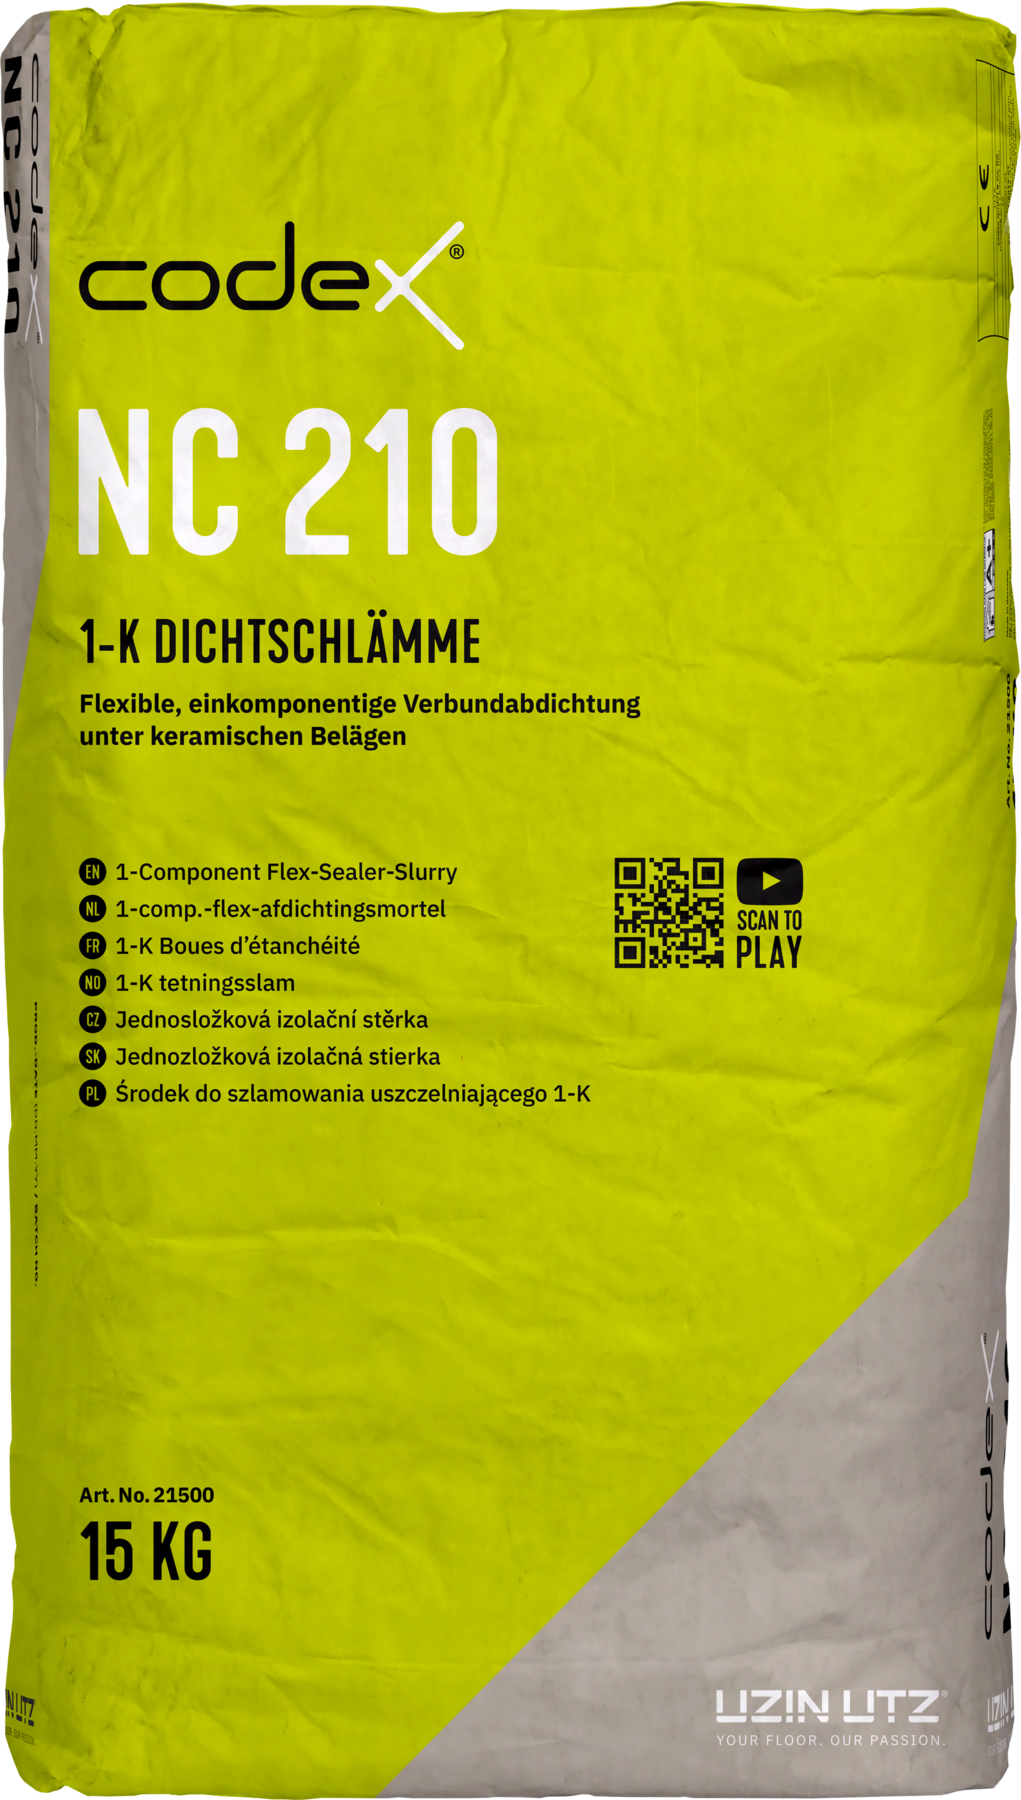 Codex NC 210 15 kg 1-K Dichtschlämme